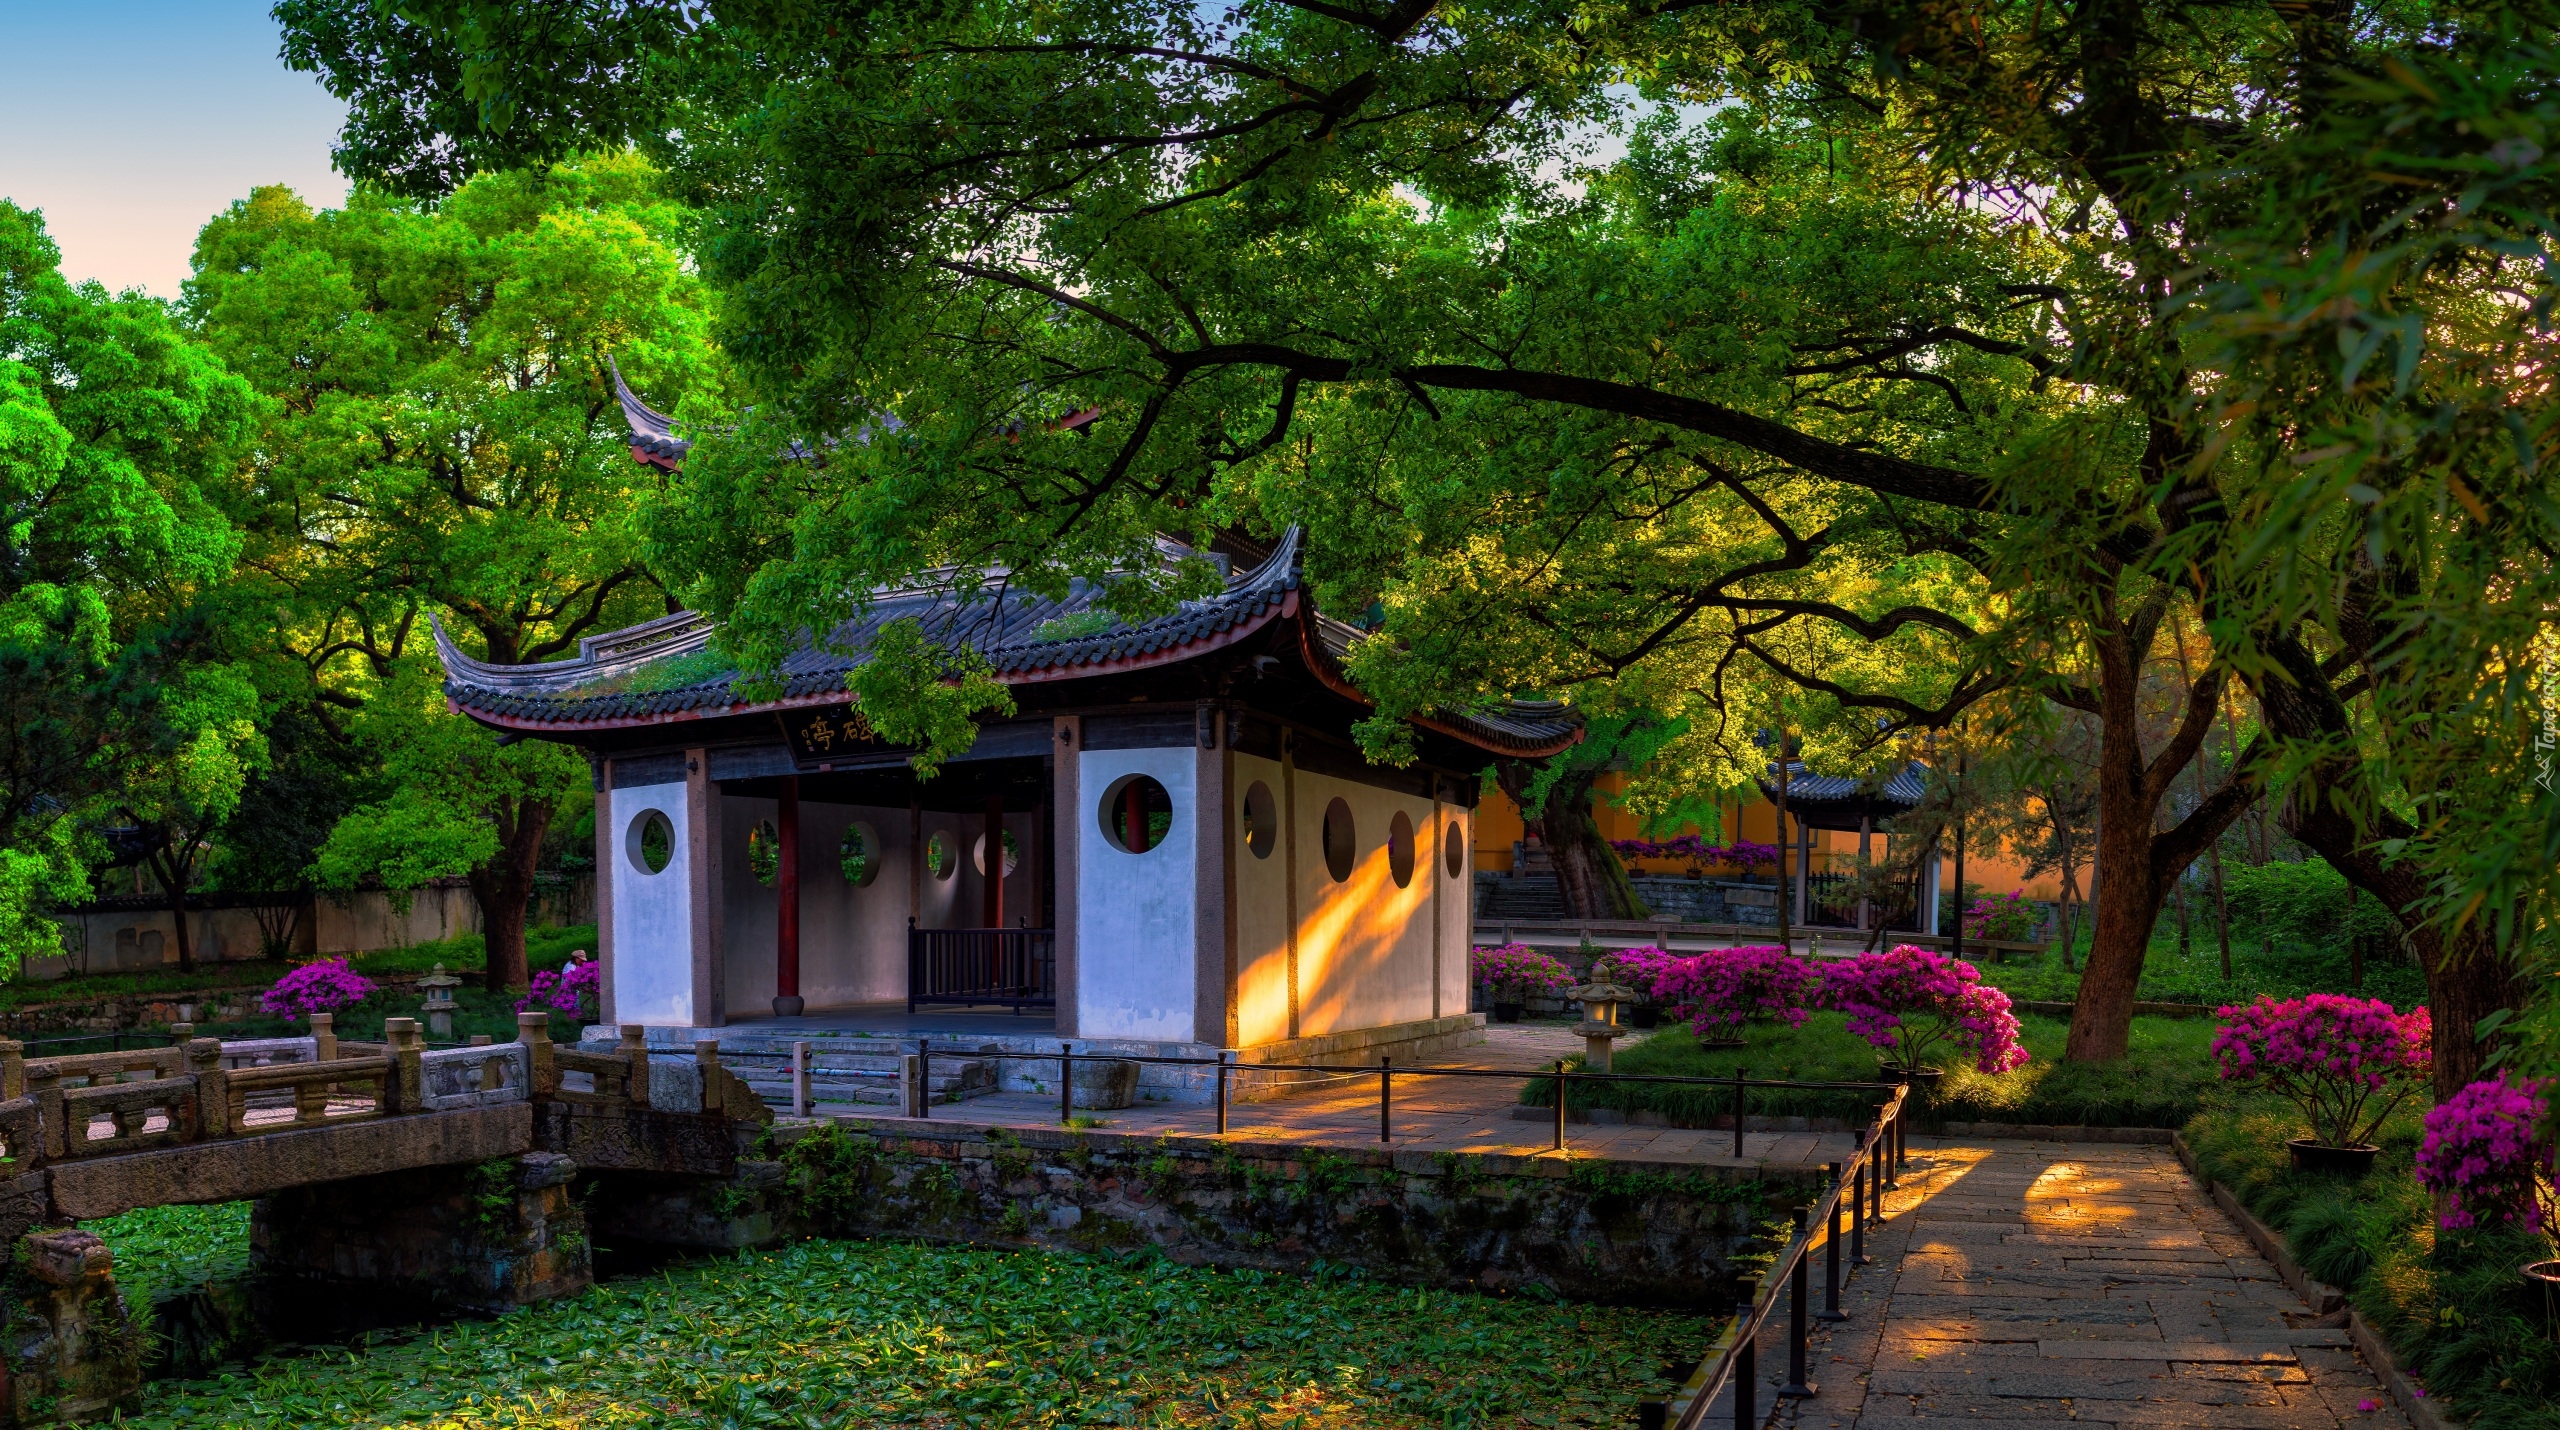 Chiny, Prowincja Jiangsu, Okolice Wuxi, Xihui Park, Altana, Drzewa